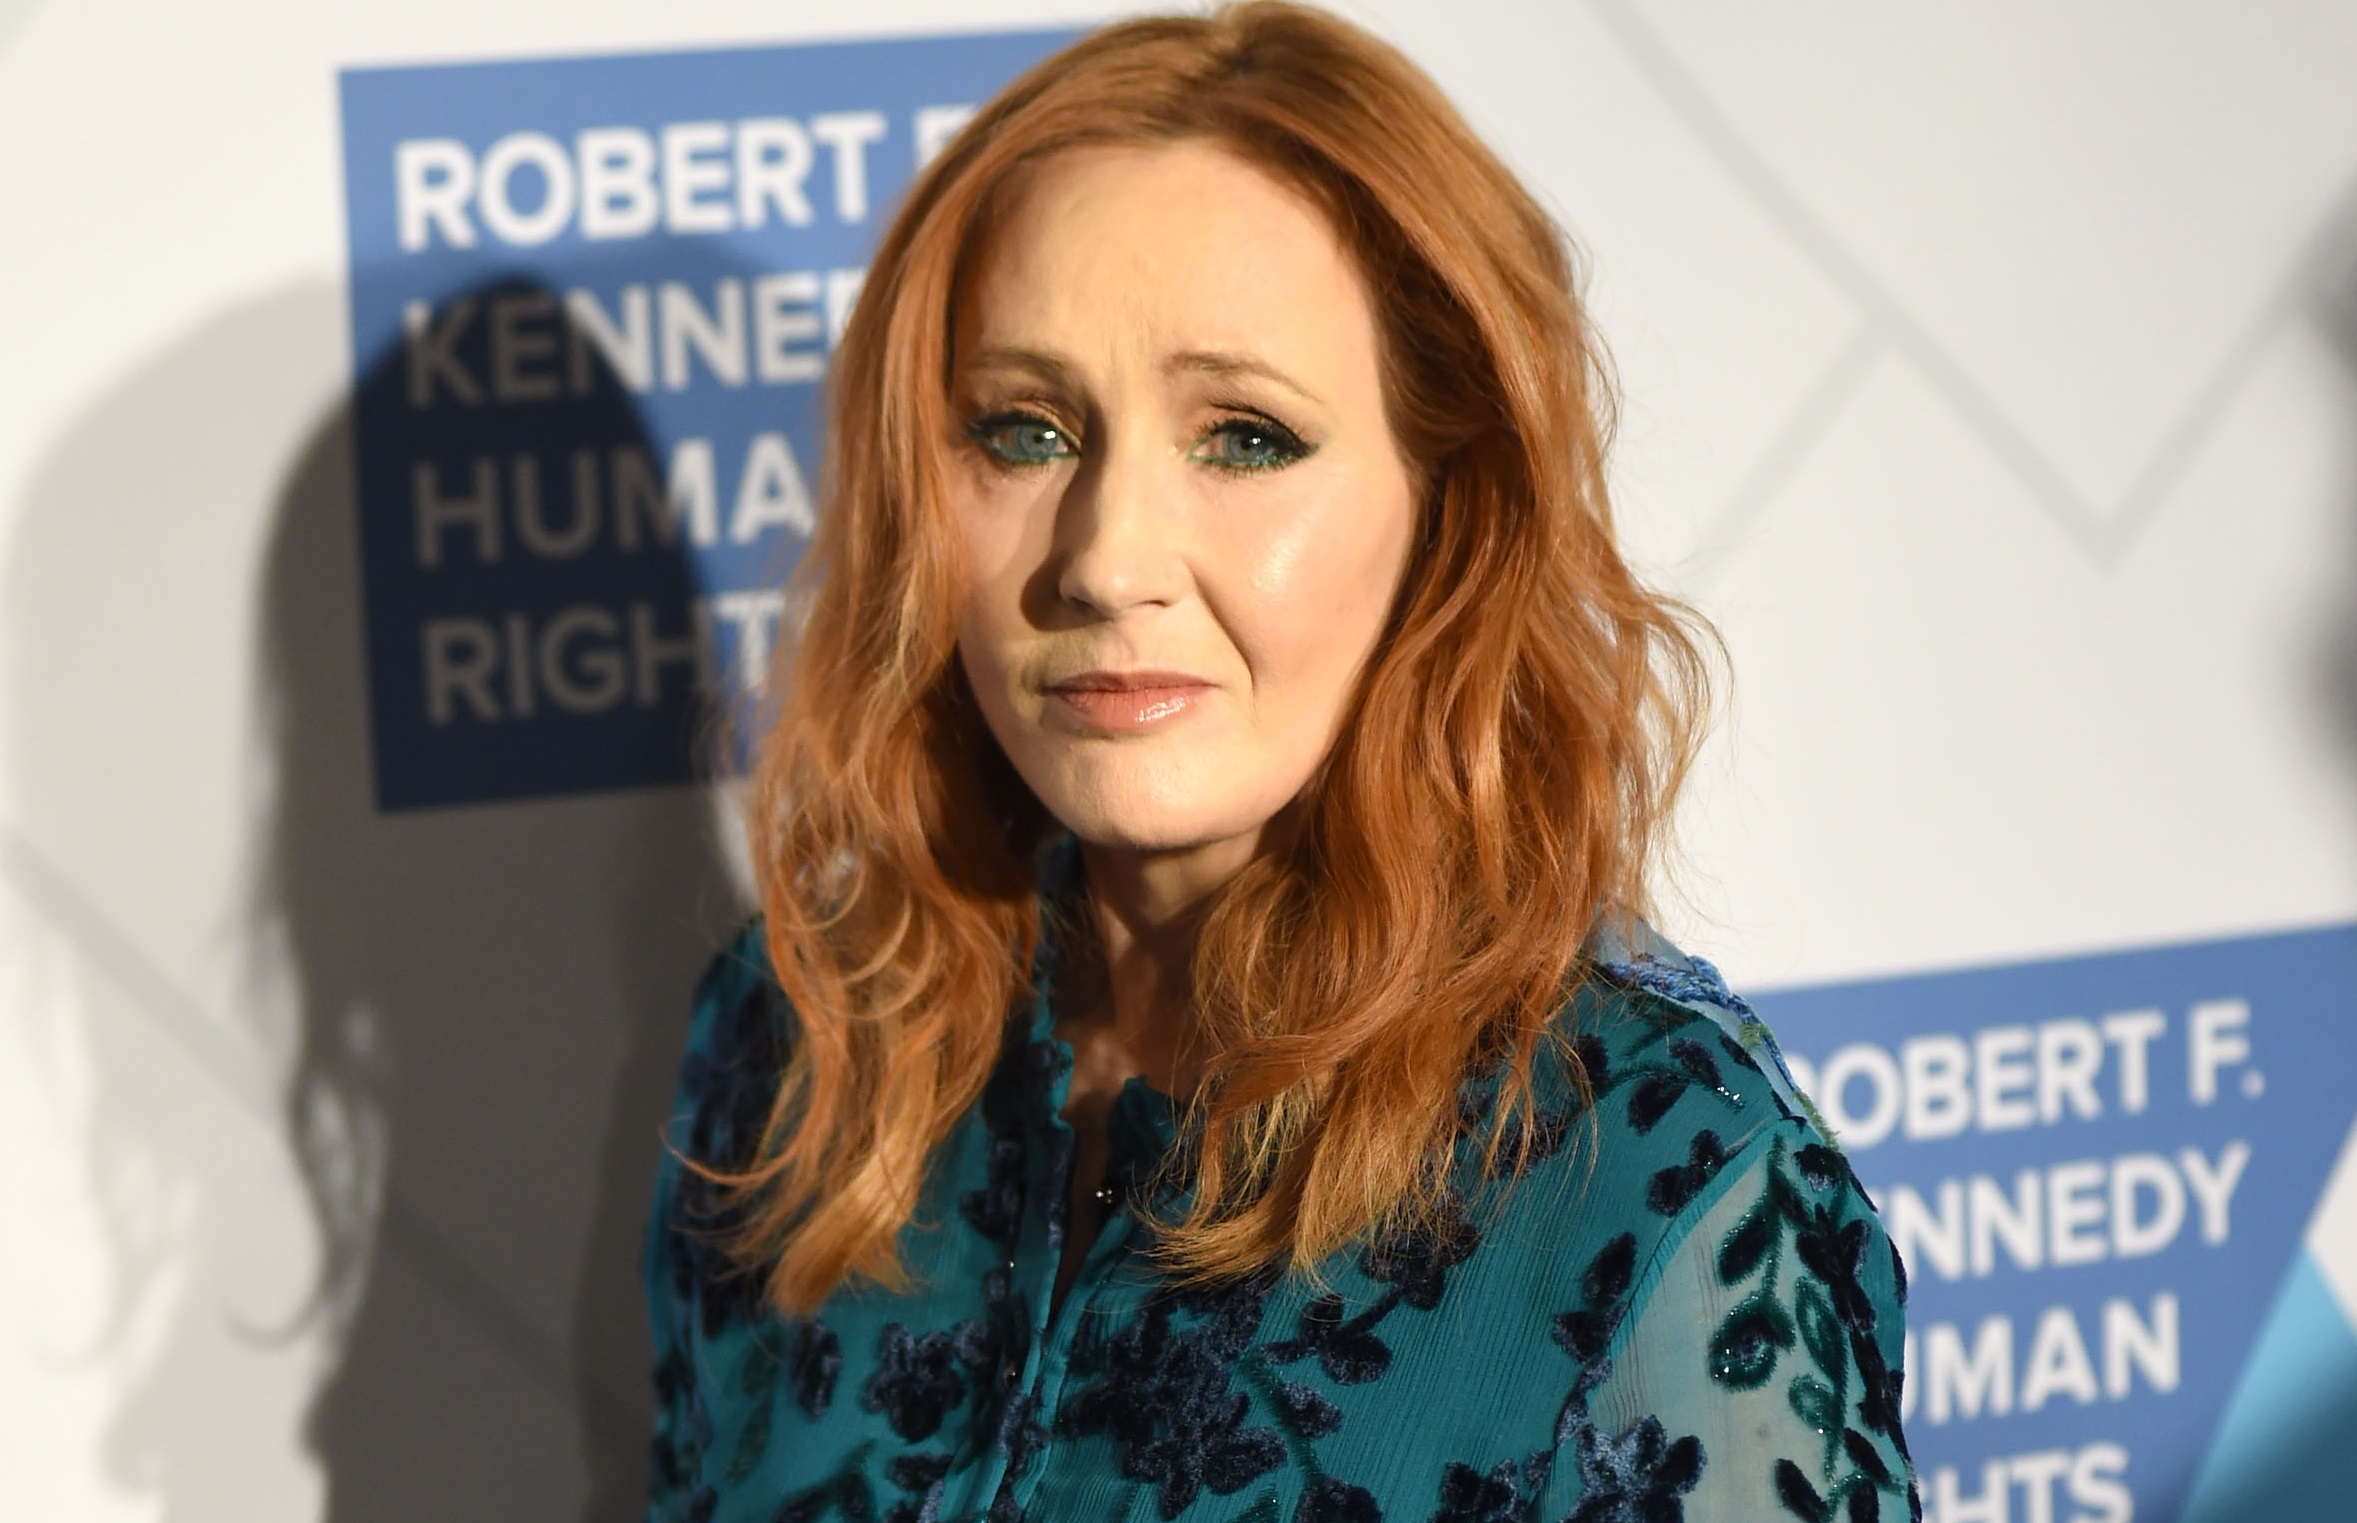 La autora no participó en la reunión por el vigésimo aniversario de las películas de Harry Potter a causa de sus comentarios sobre la comunidad trans.